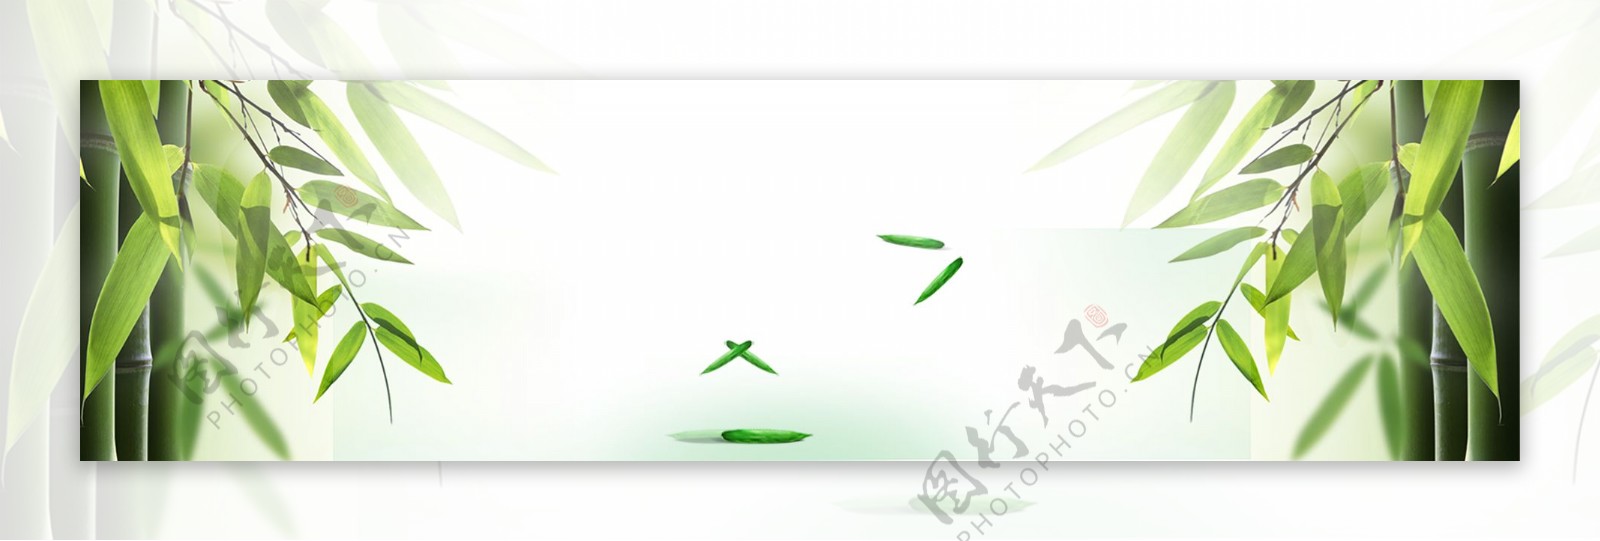 绿色竹叶banner背景